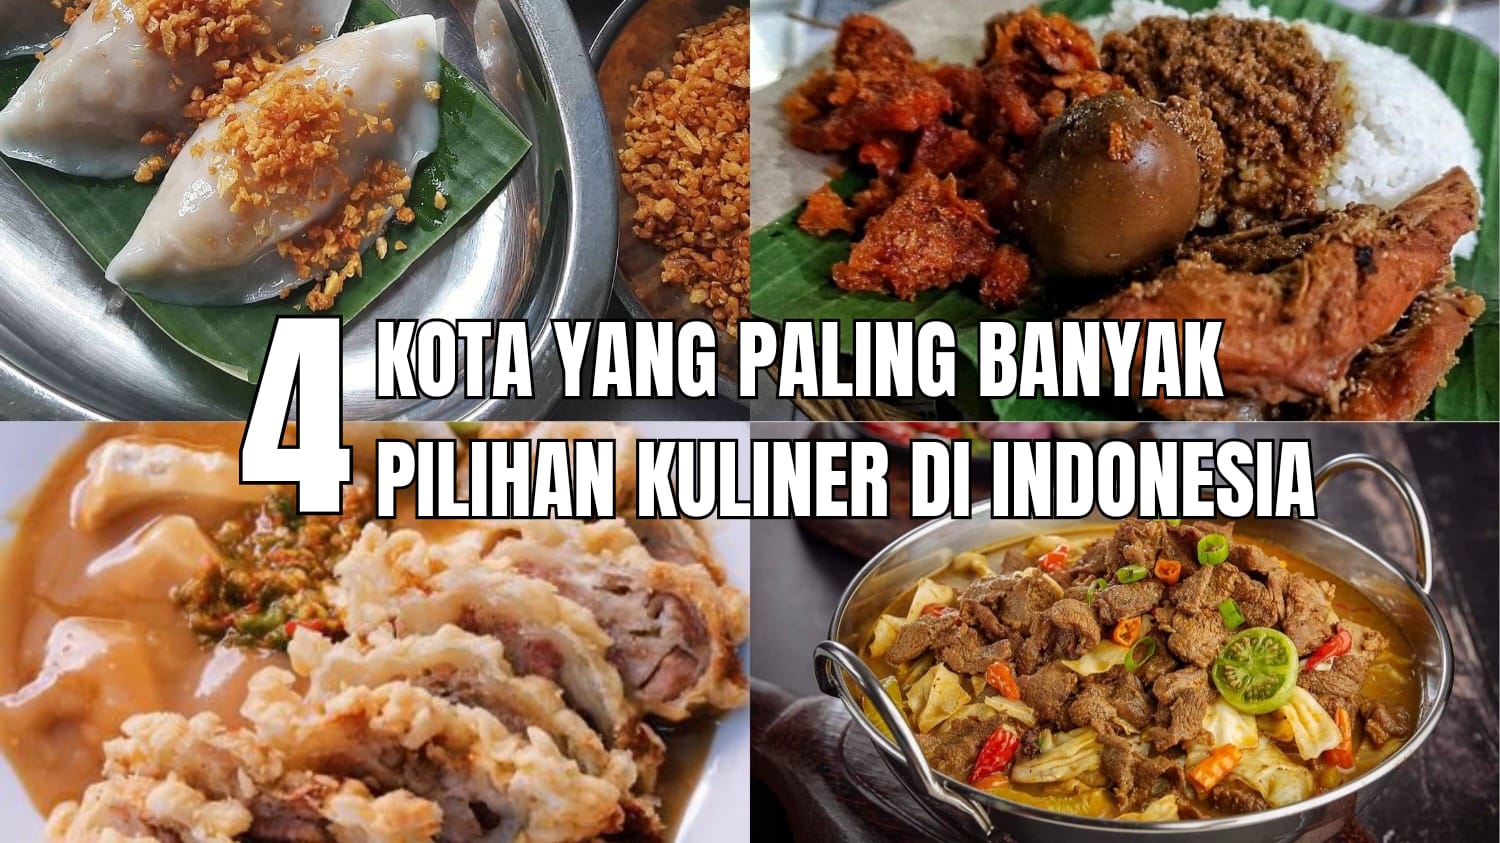 Auto Kenyang! Inilah 4 Kota yang Paling Banyak Pilihan Kuliner di Indonesia, No 1 Bukan Yogyakarta